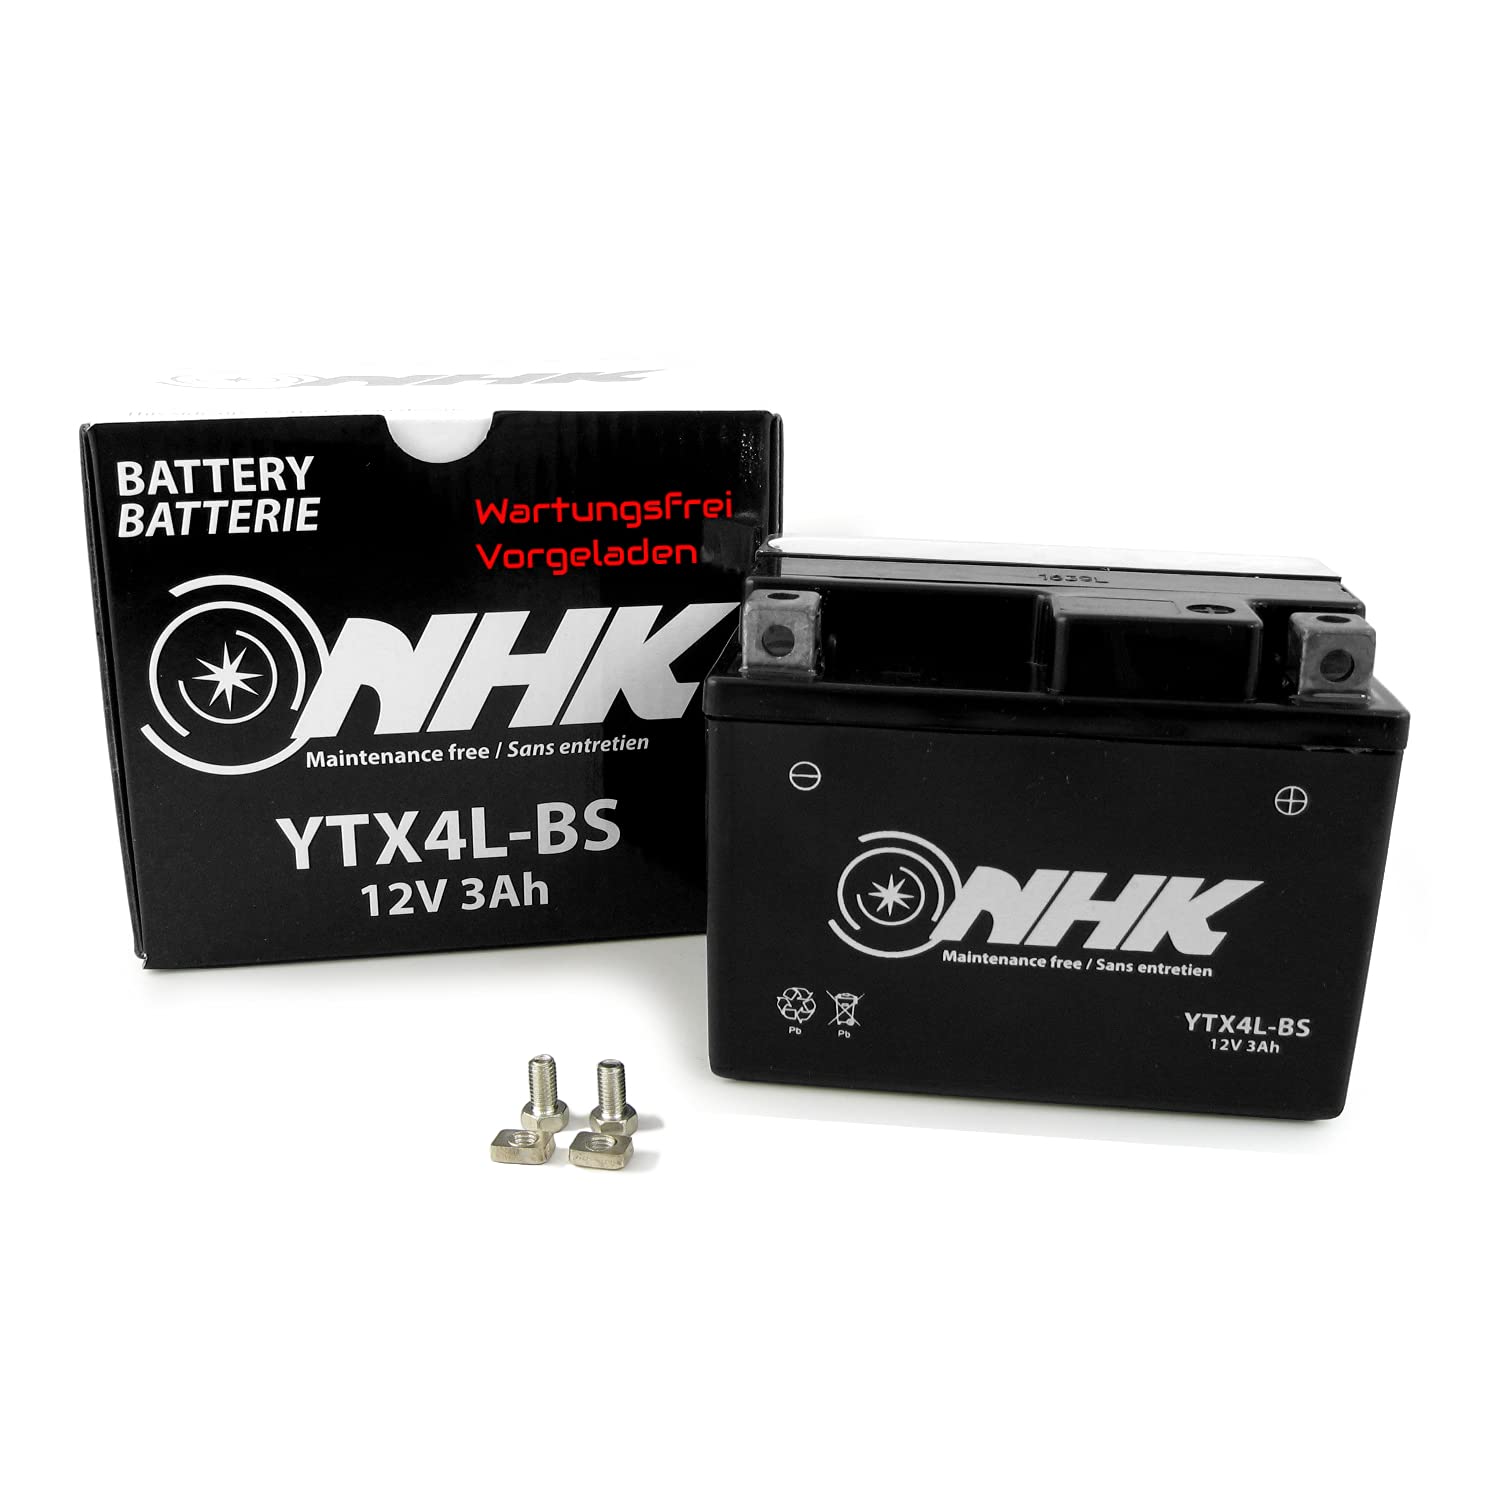 Wartungsfreie Batterie 3Ah kompatibel mit MBK Nitro 50 03-12 SA14, Nitro 50-98 55BR (YTX4L-BS) von Area1